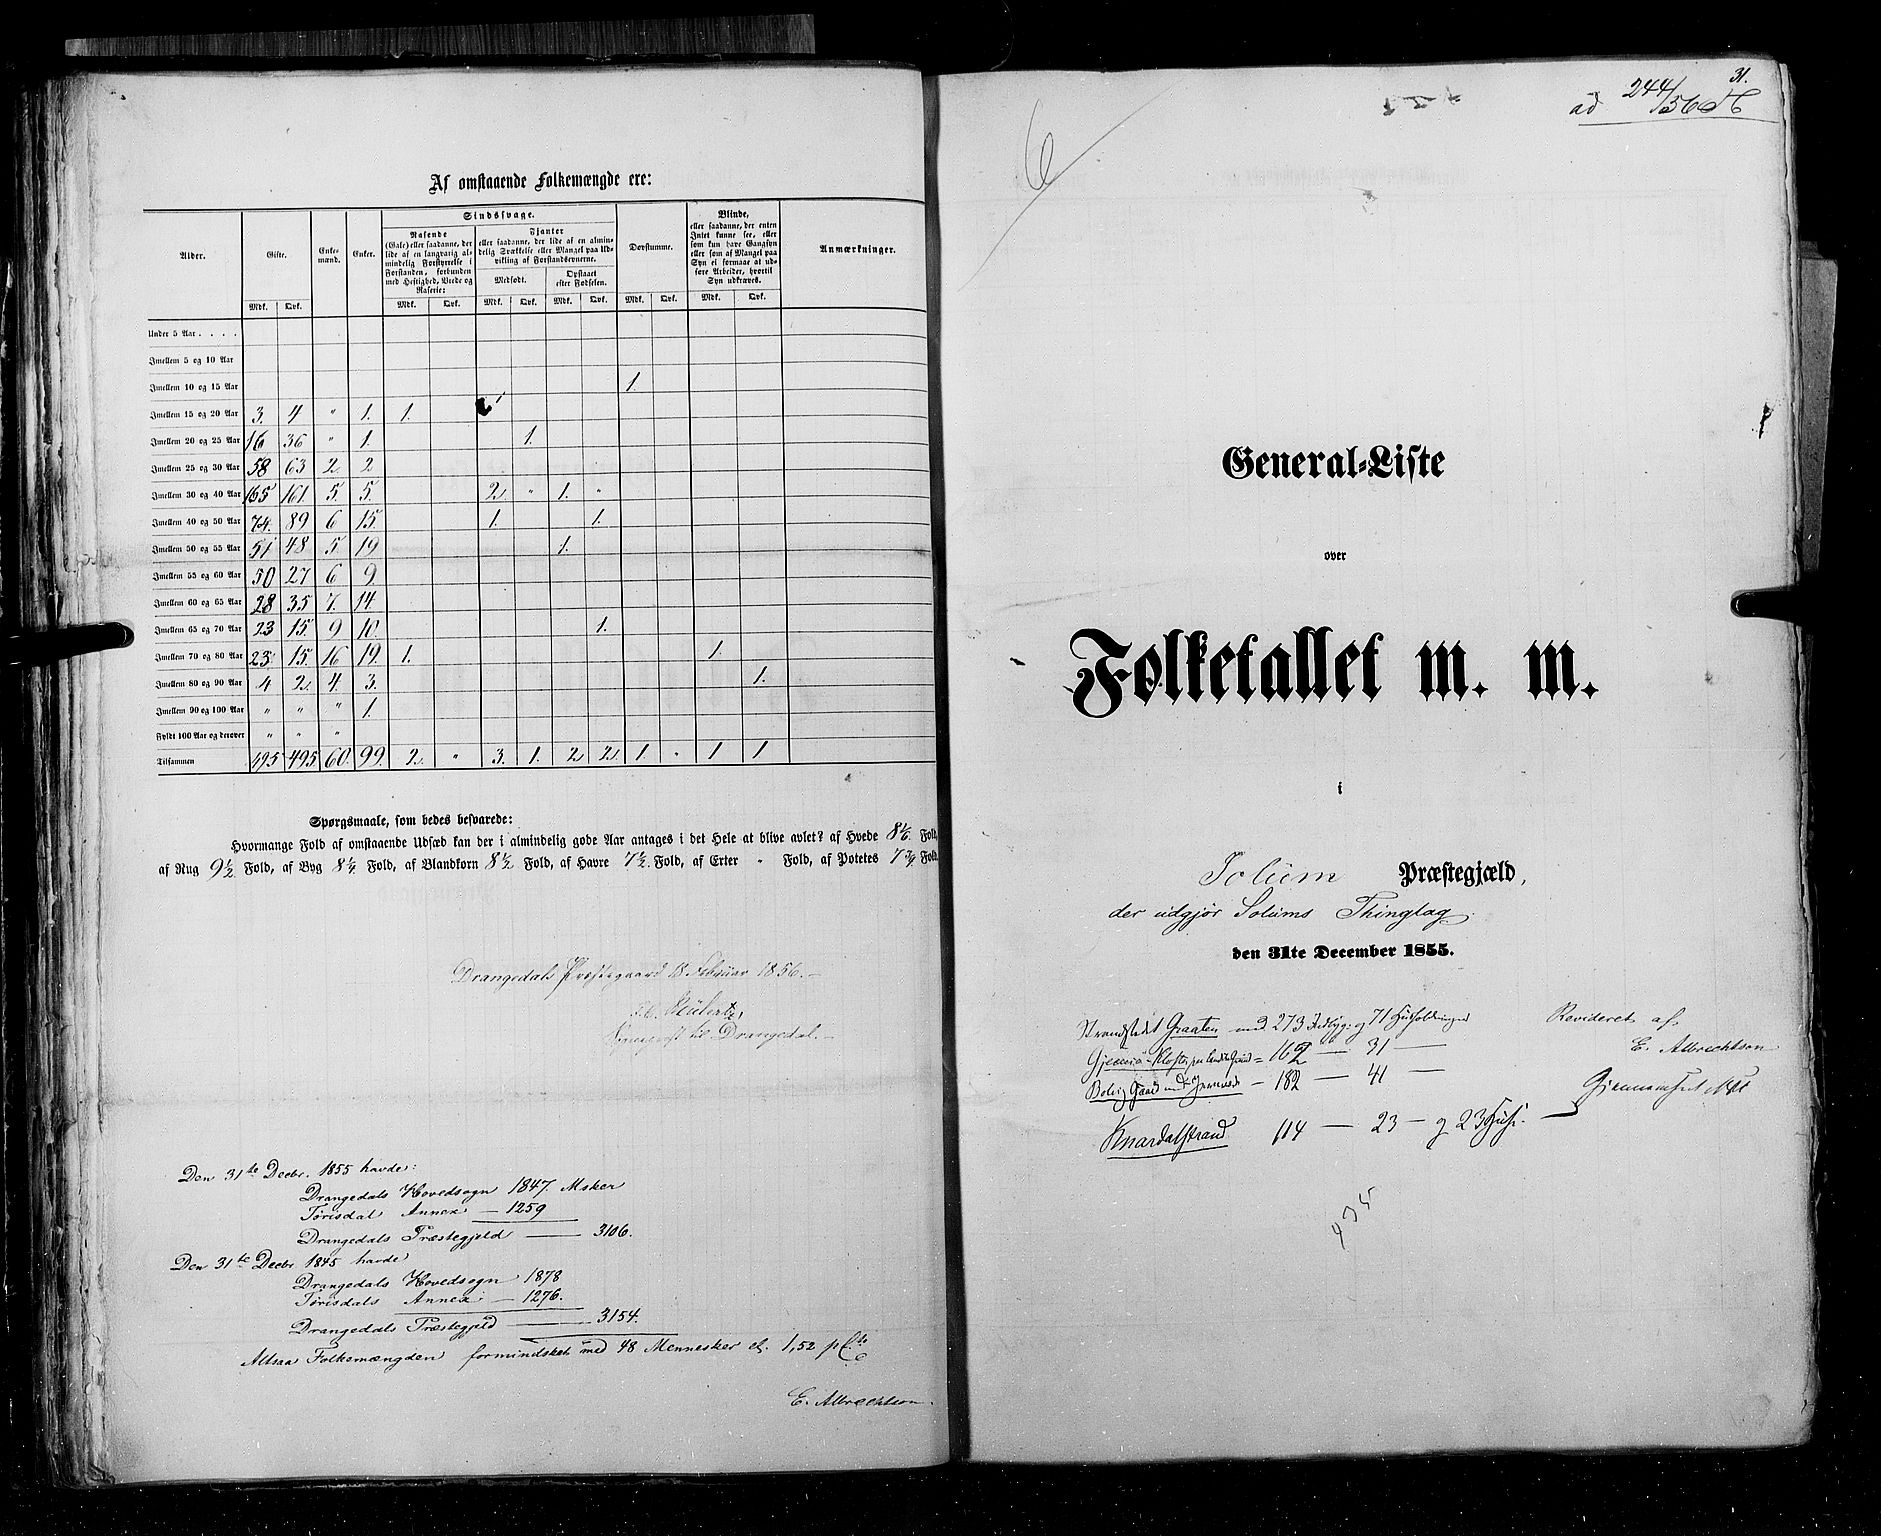 RA, Census 1855, vol. 3: Bratsberg amt, Nedenes amt og Lister og Mandal amt, 1855, p. 31